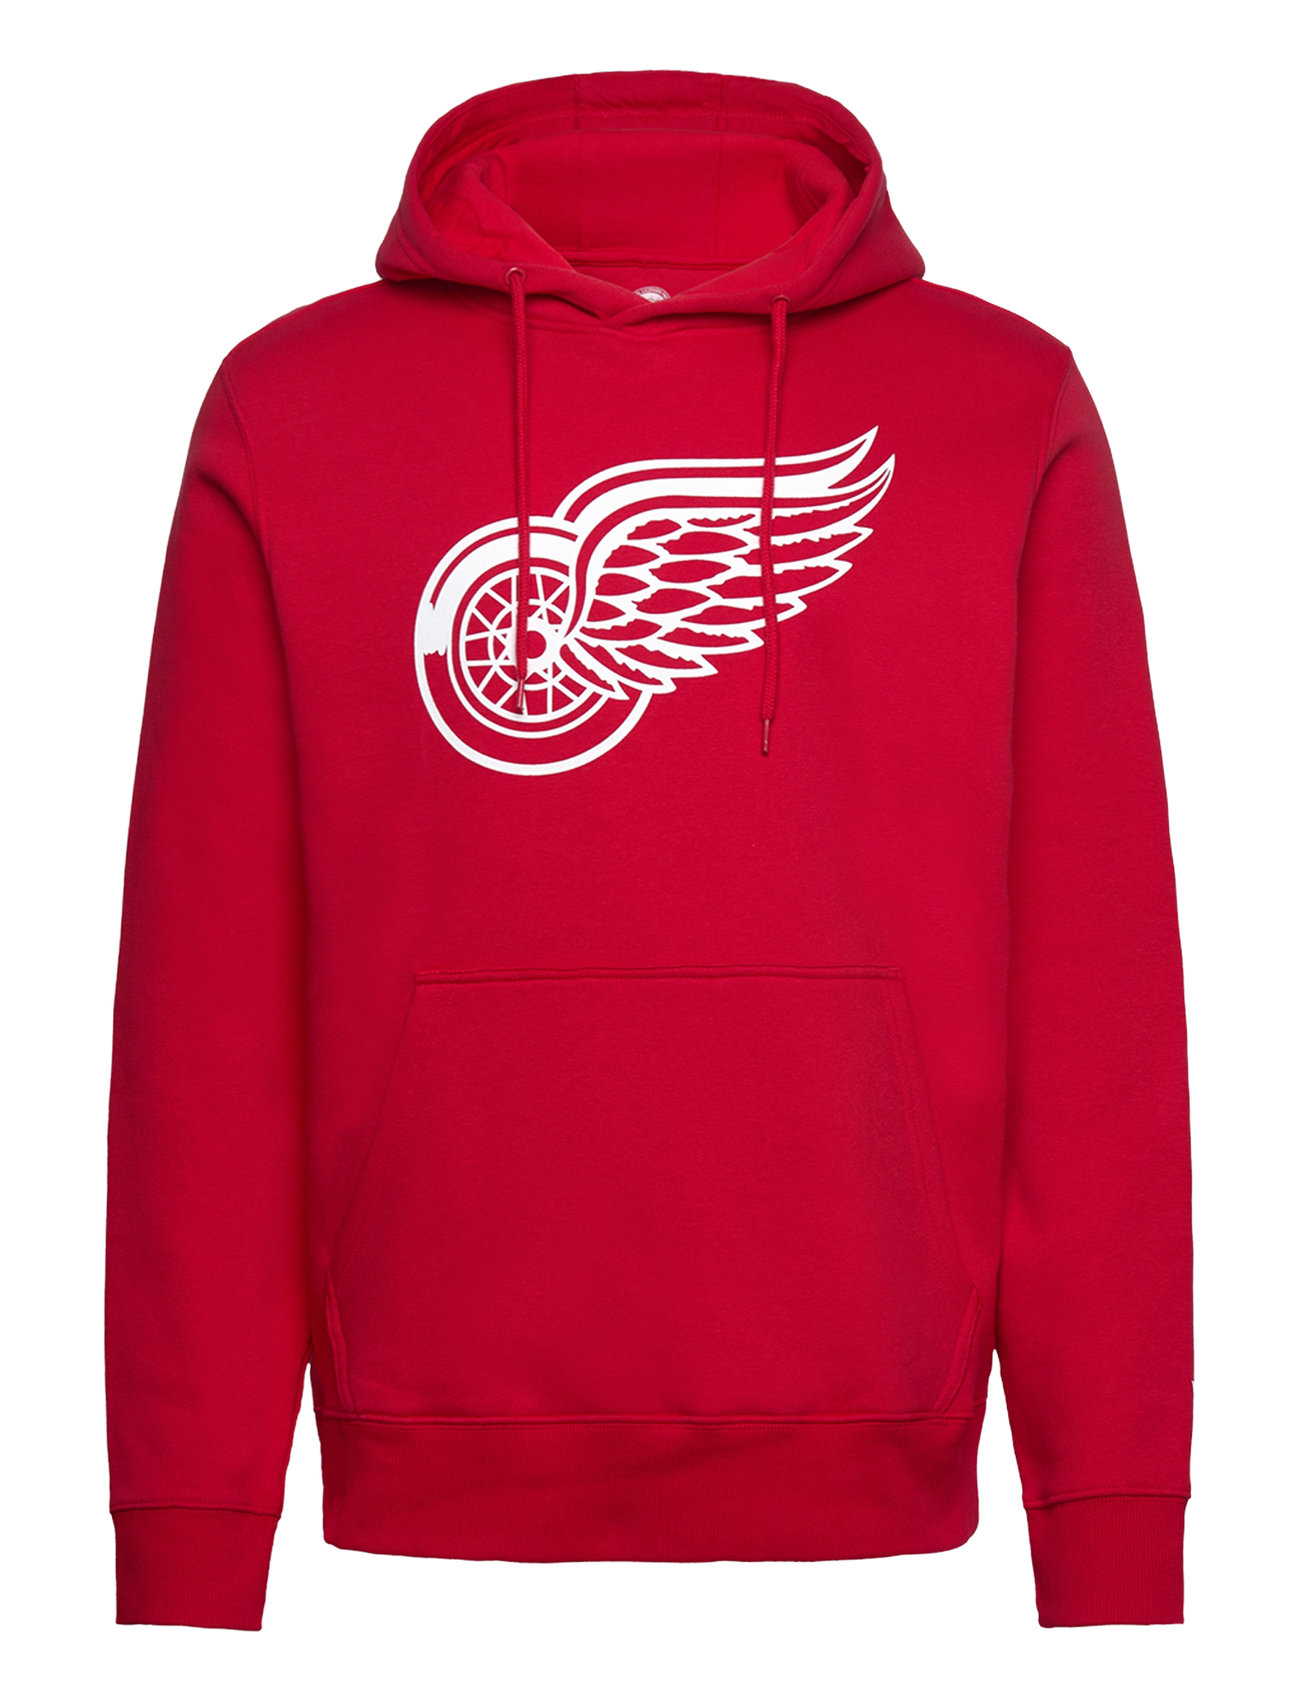 Detroit Red Wings Primary Logo Graphic Hoodie Tops Sweatshirts & Hoodies Hoodies Red Fanatics